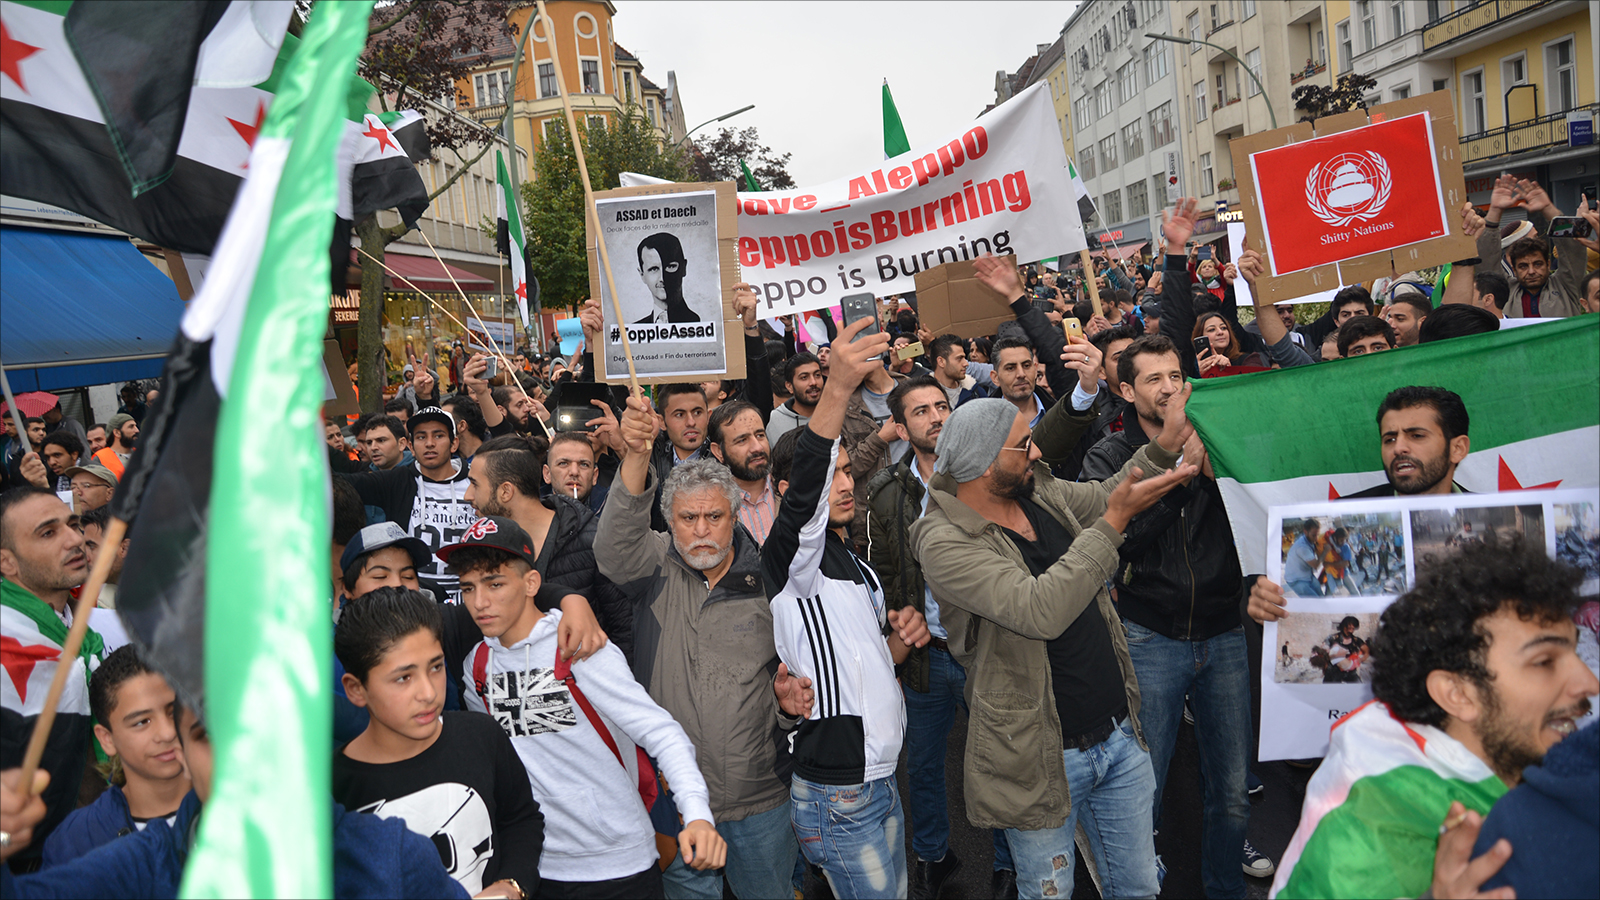 ‪لاجئون سوريون يرفعون بمظاهرة في برلين لافتات تطالب بجلب الأسد لمحكمة الجنايات الدولية‬ لاجئون سوريون يرفعون بمظاهرة في برلين لافتات تطالب بجلب الأسد لمحكمة الجنايات الدولية (الجزيرة)